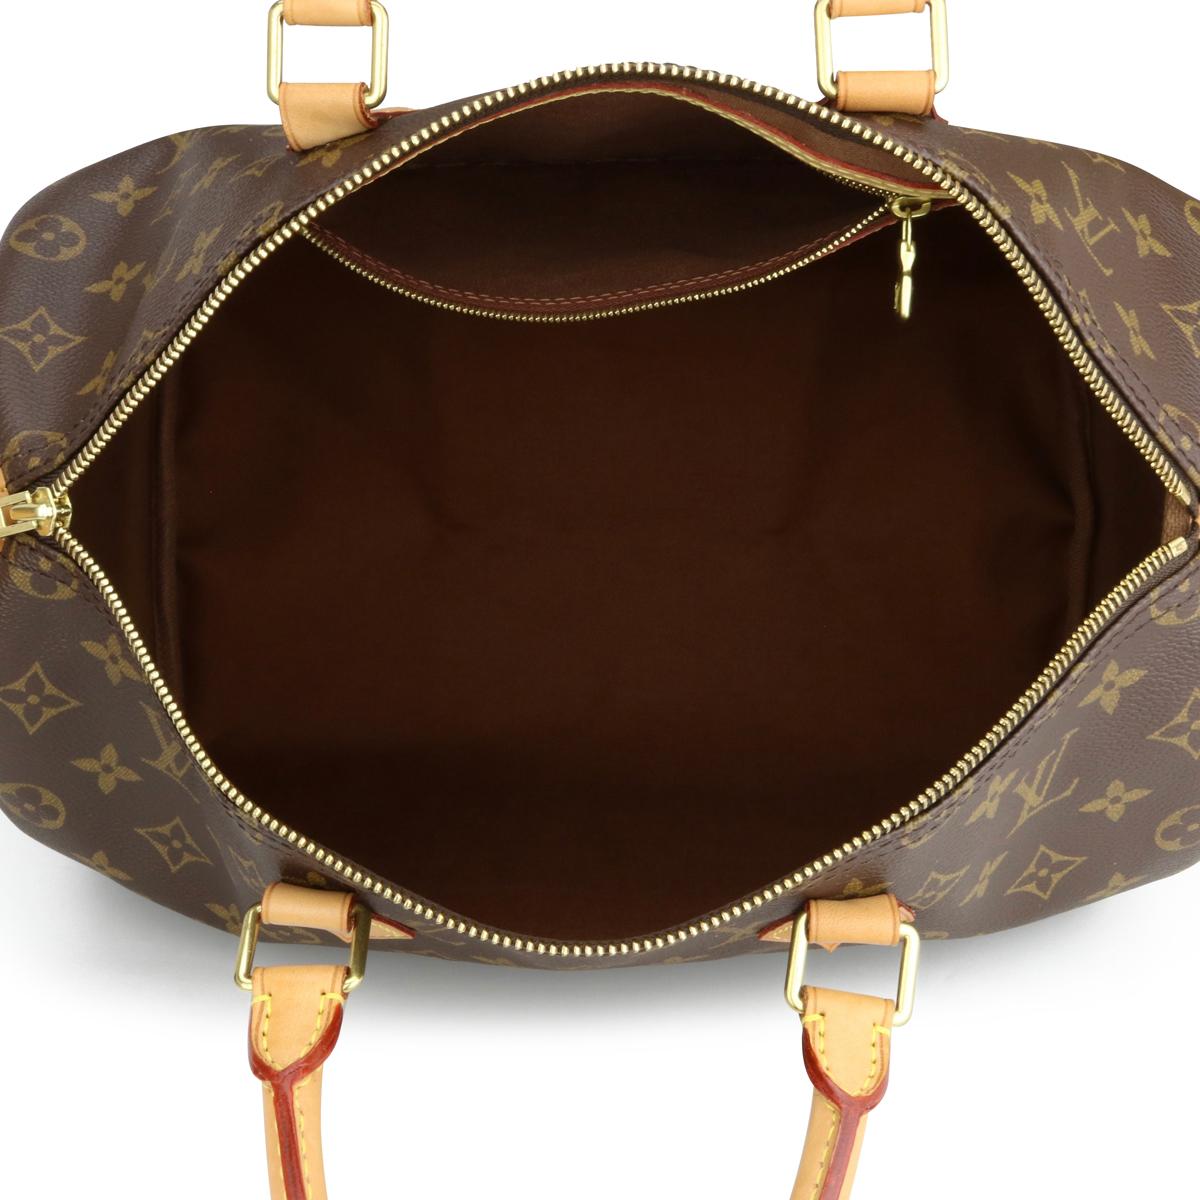 Louis Vuitton Speedy 35 Bag in Monogram 2018 11